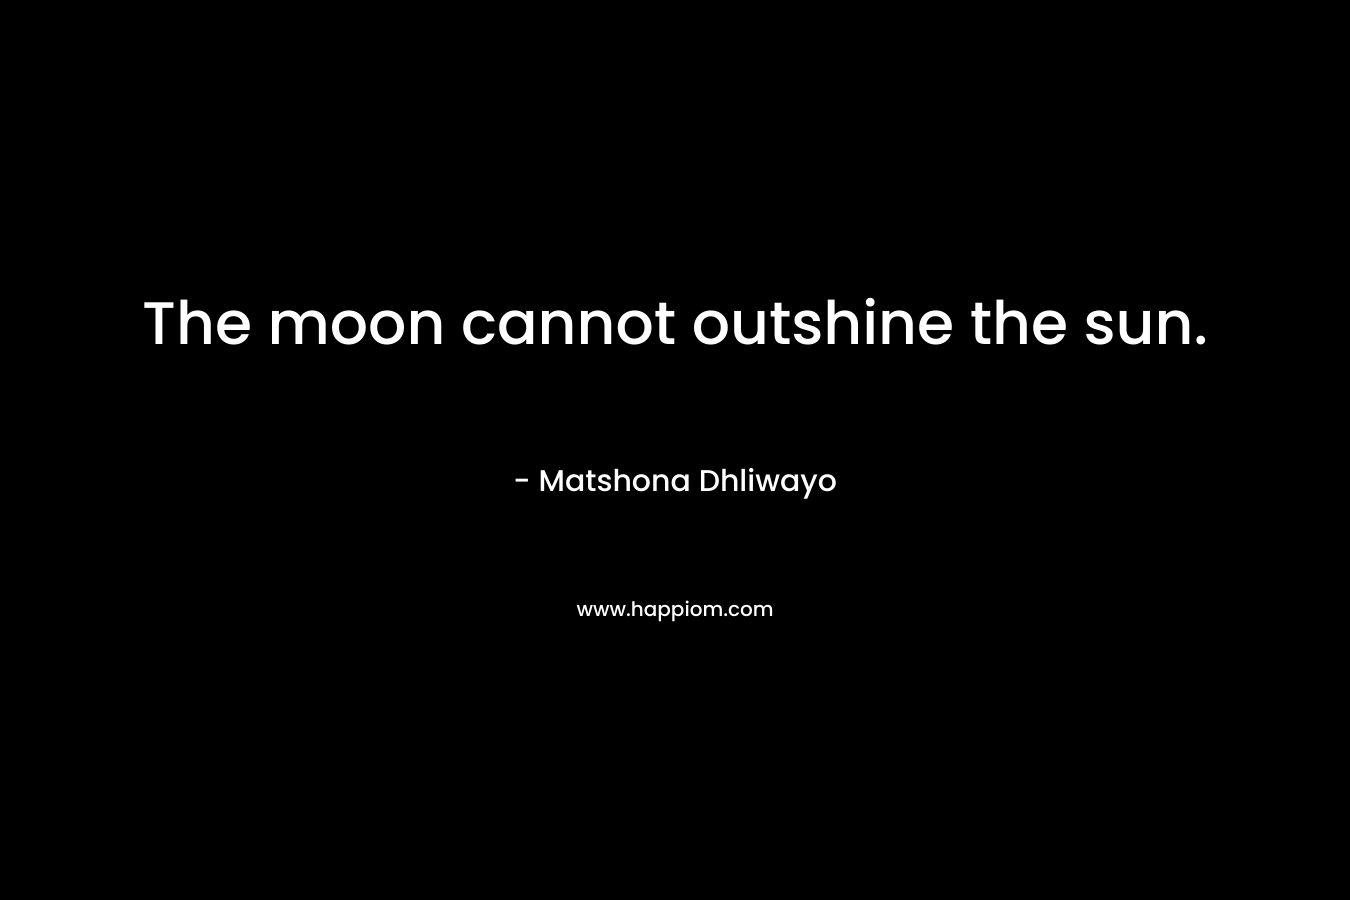 The moon cannot outshine the sun. – Matshona Dhliwayo